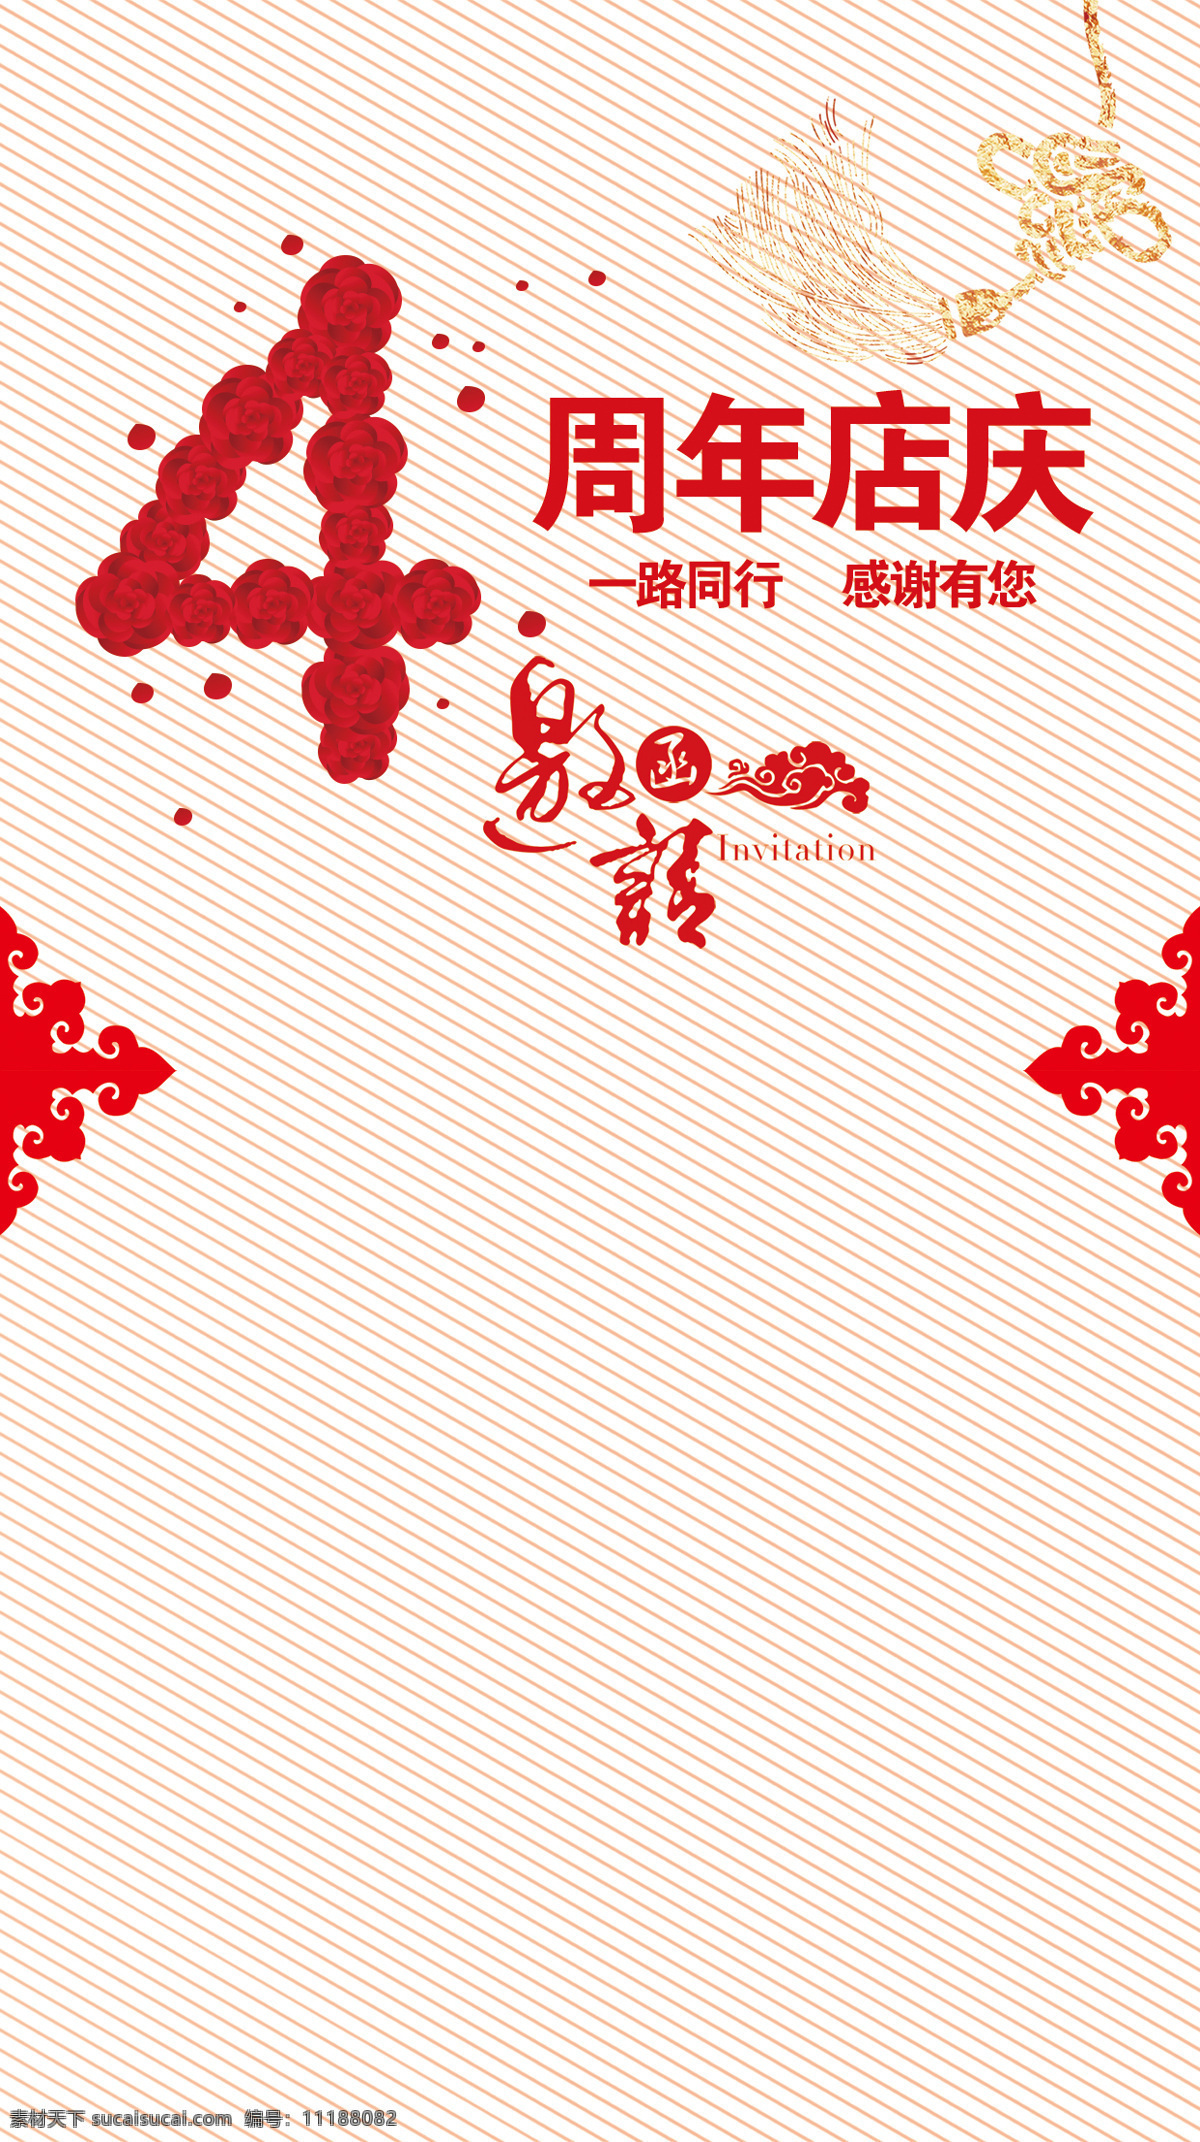 周年庆 海报 h5 背景 手绘 红色花纹 4周年庆 h5背景